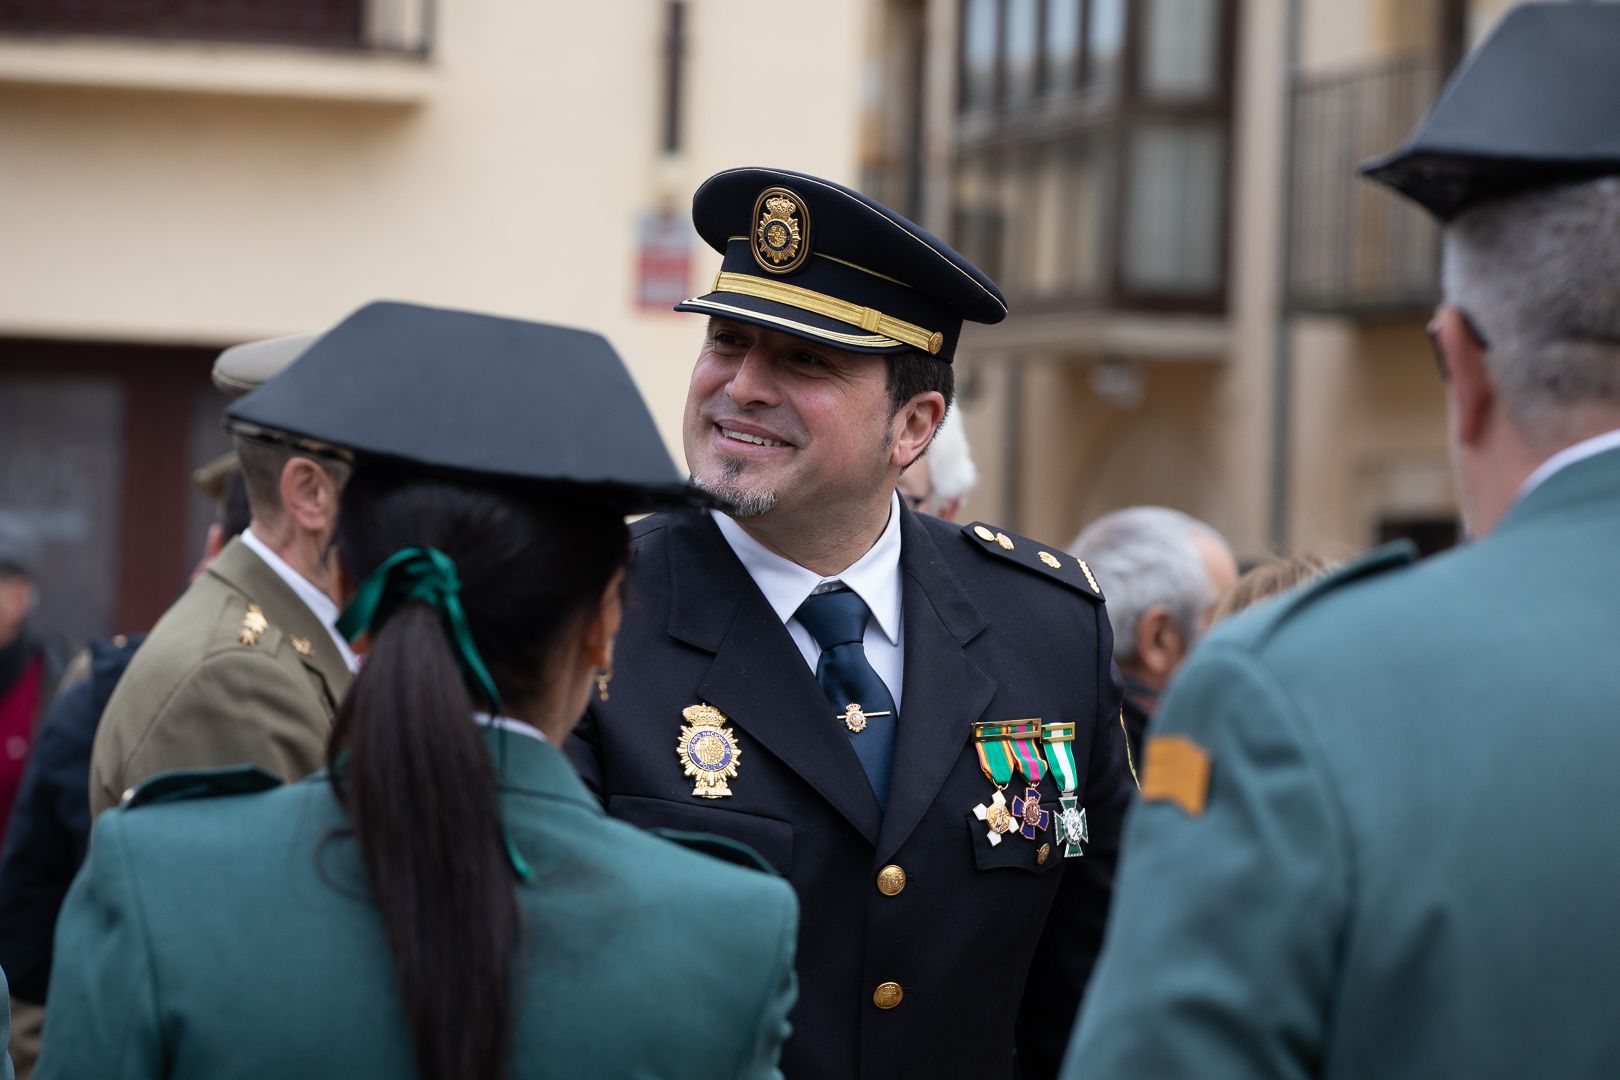 GALERÍA | La Policía Nacional celebra sus 200 años en Zamora